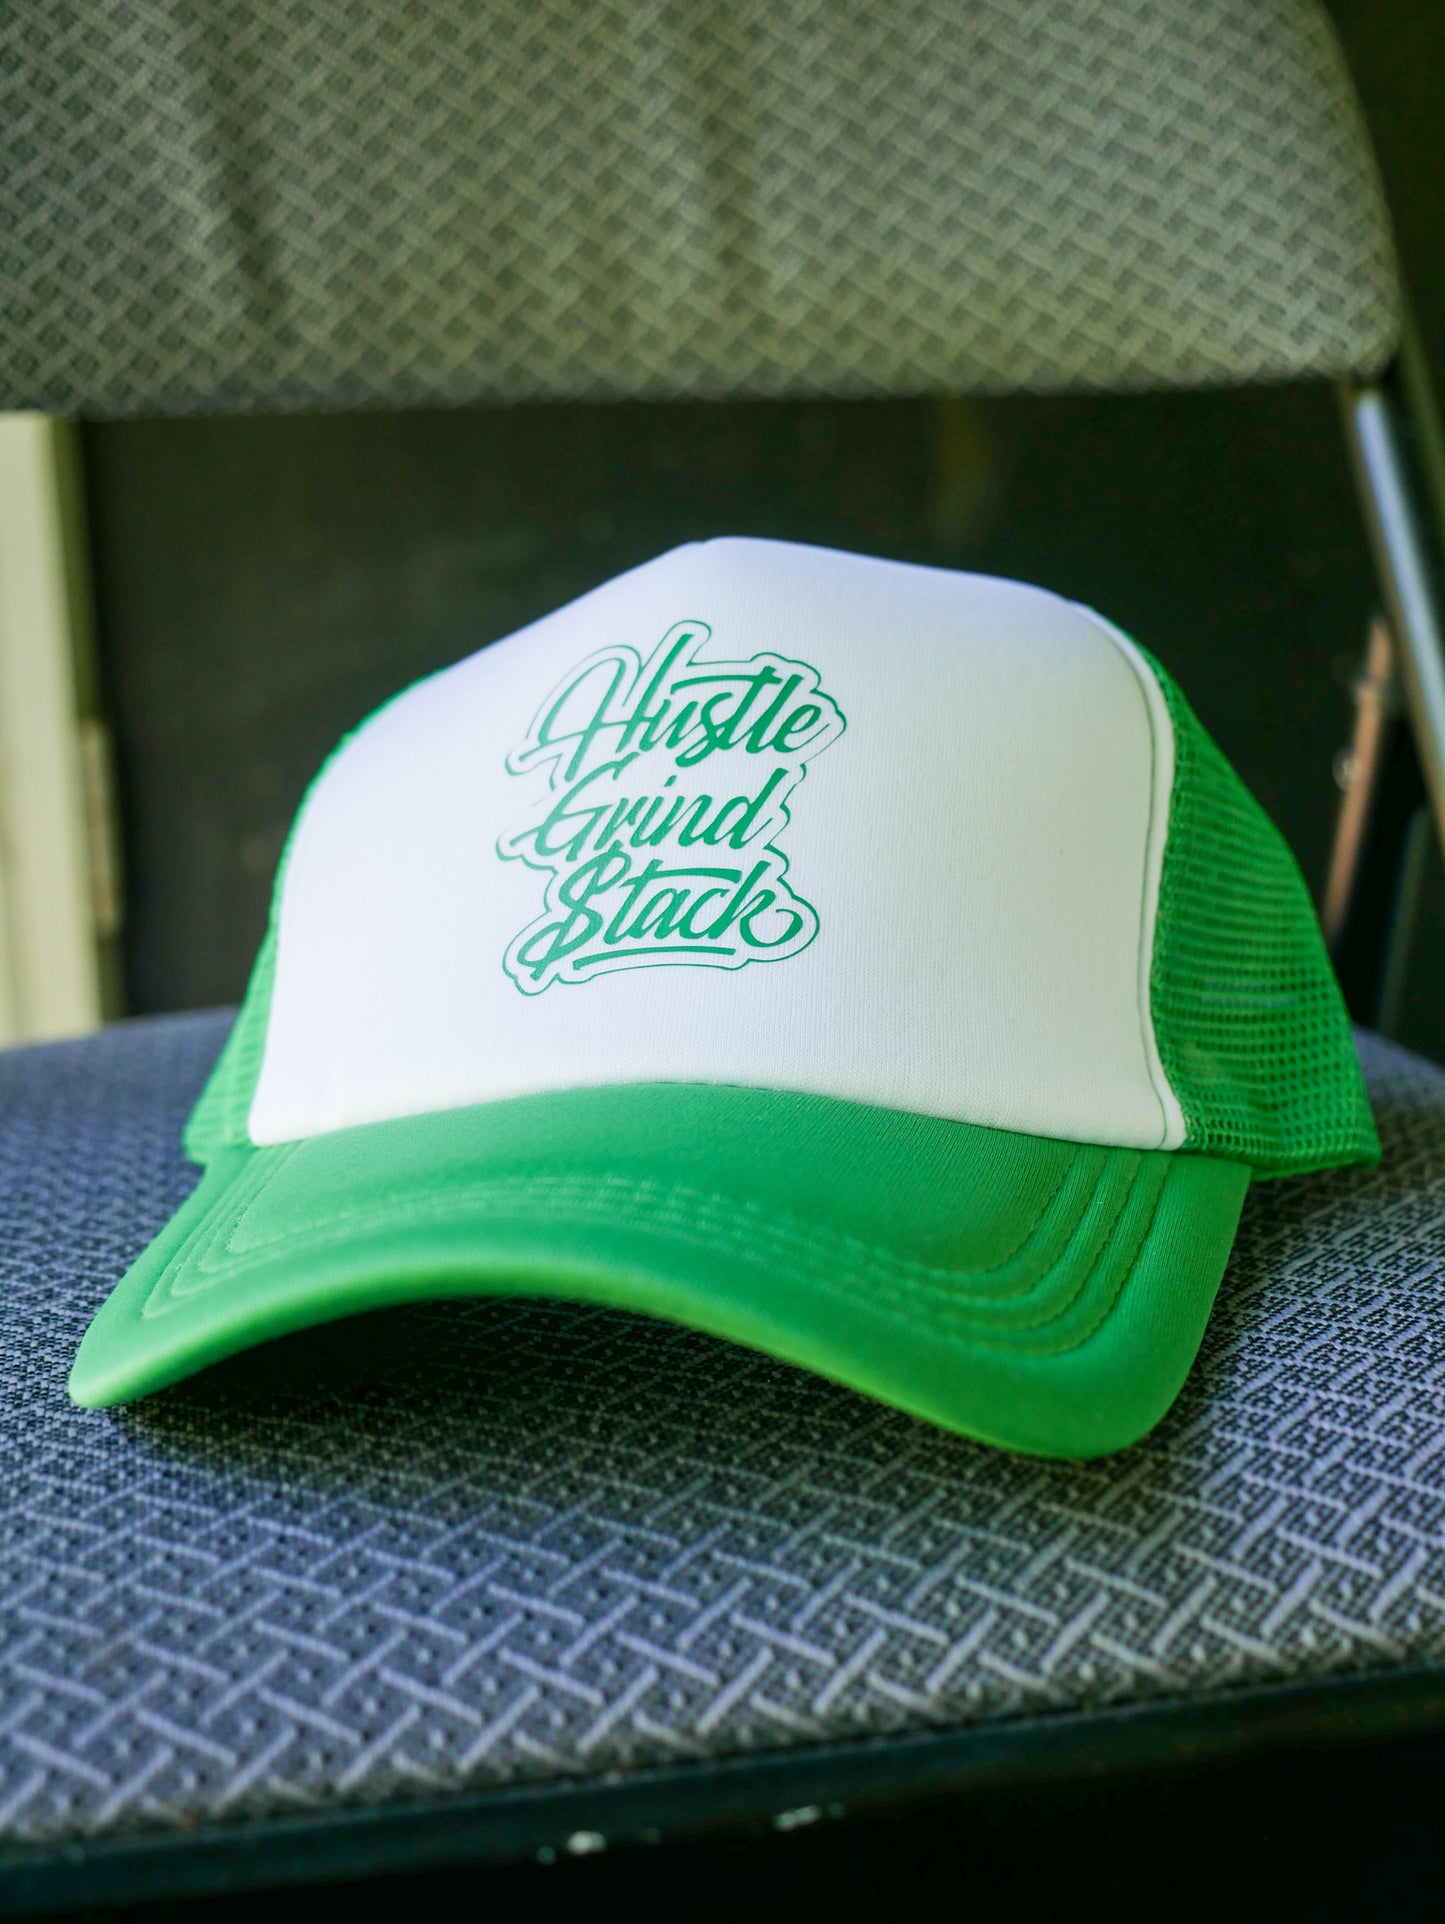 Hustle,Grind, Stack -Trucker Hats